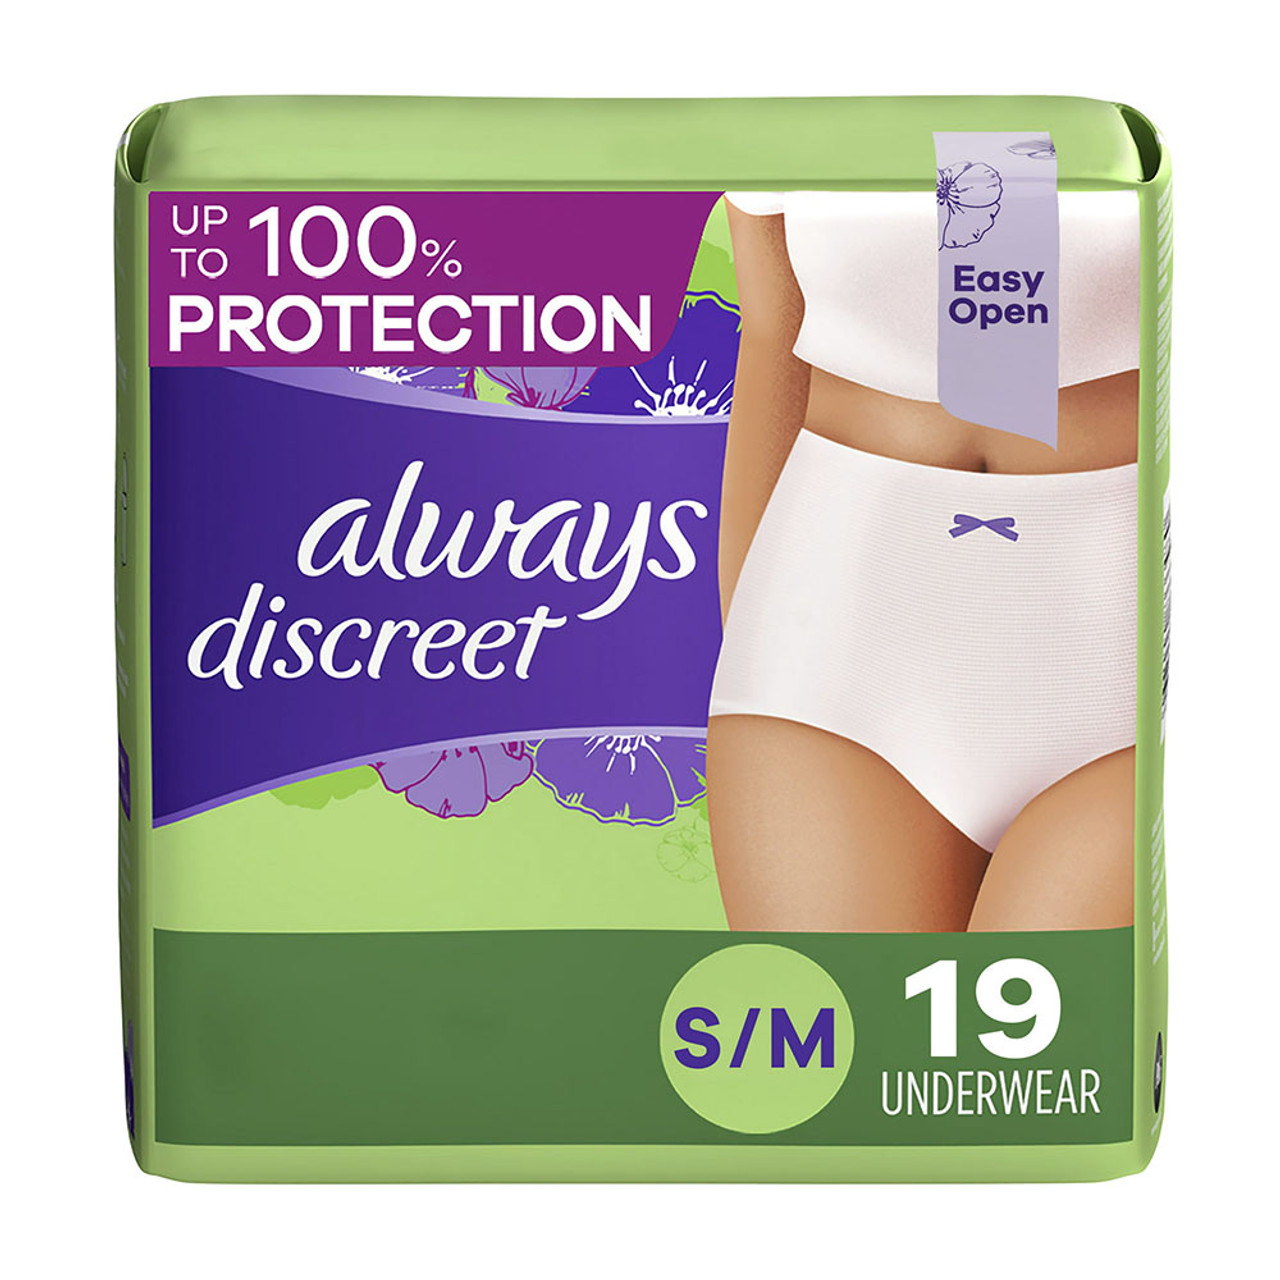 Depend Underwear, Maximum, Small 19 Ea, Feminine Care